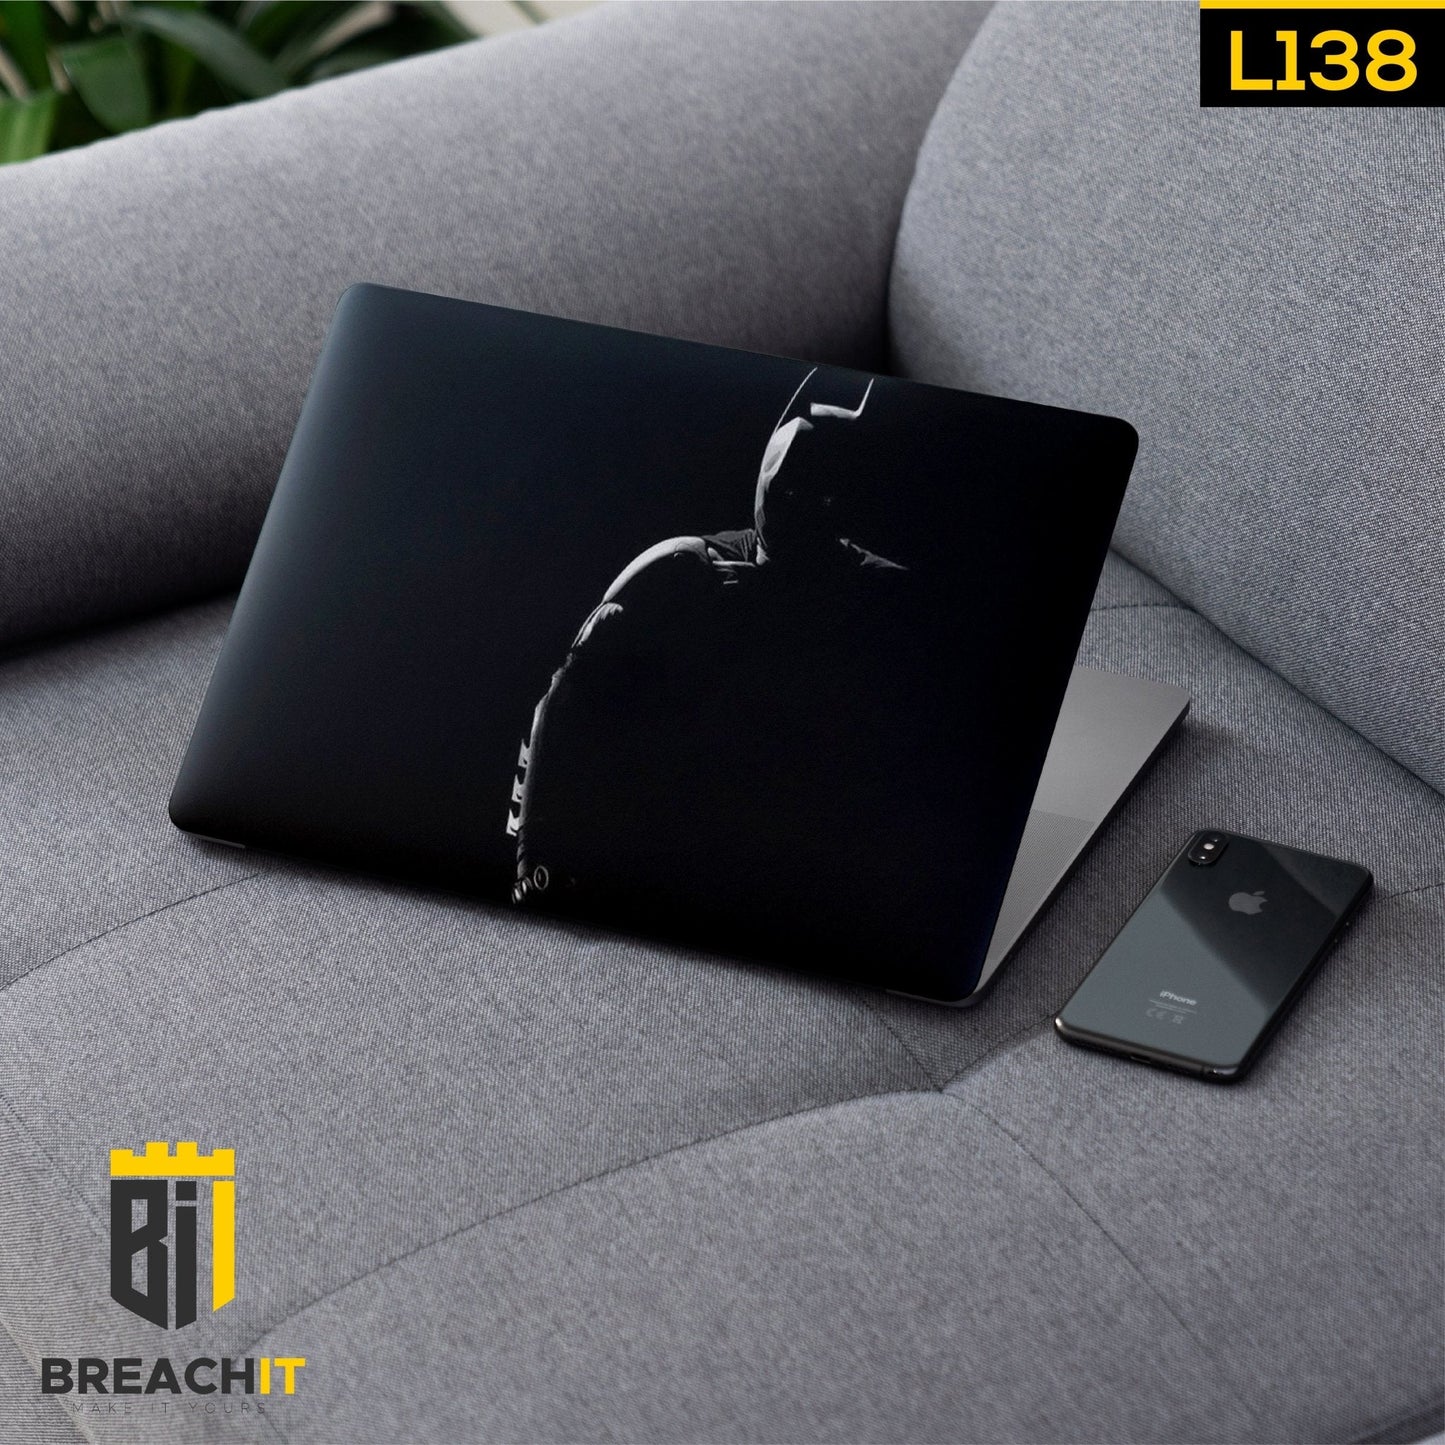 L138 Batman Laptop Skin - BREACHIT